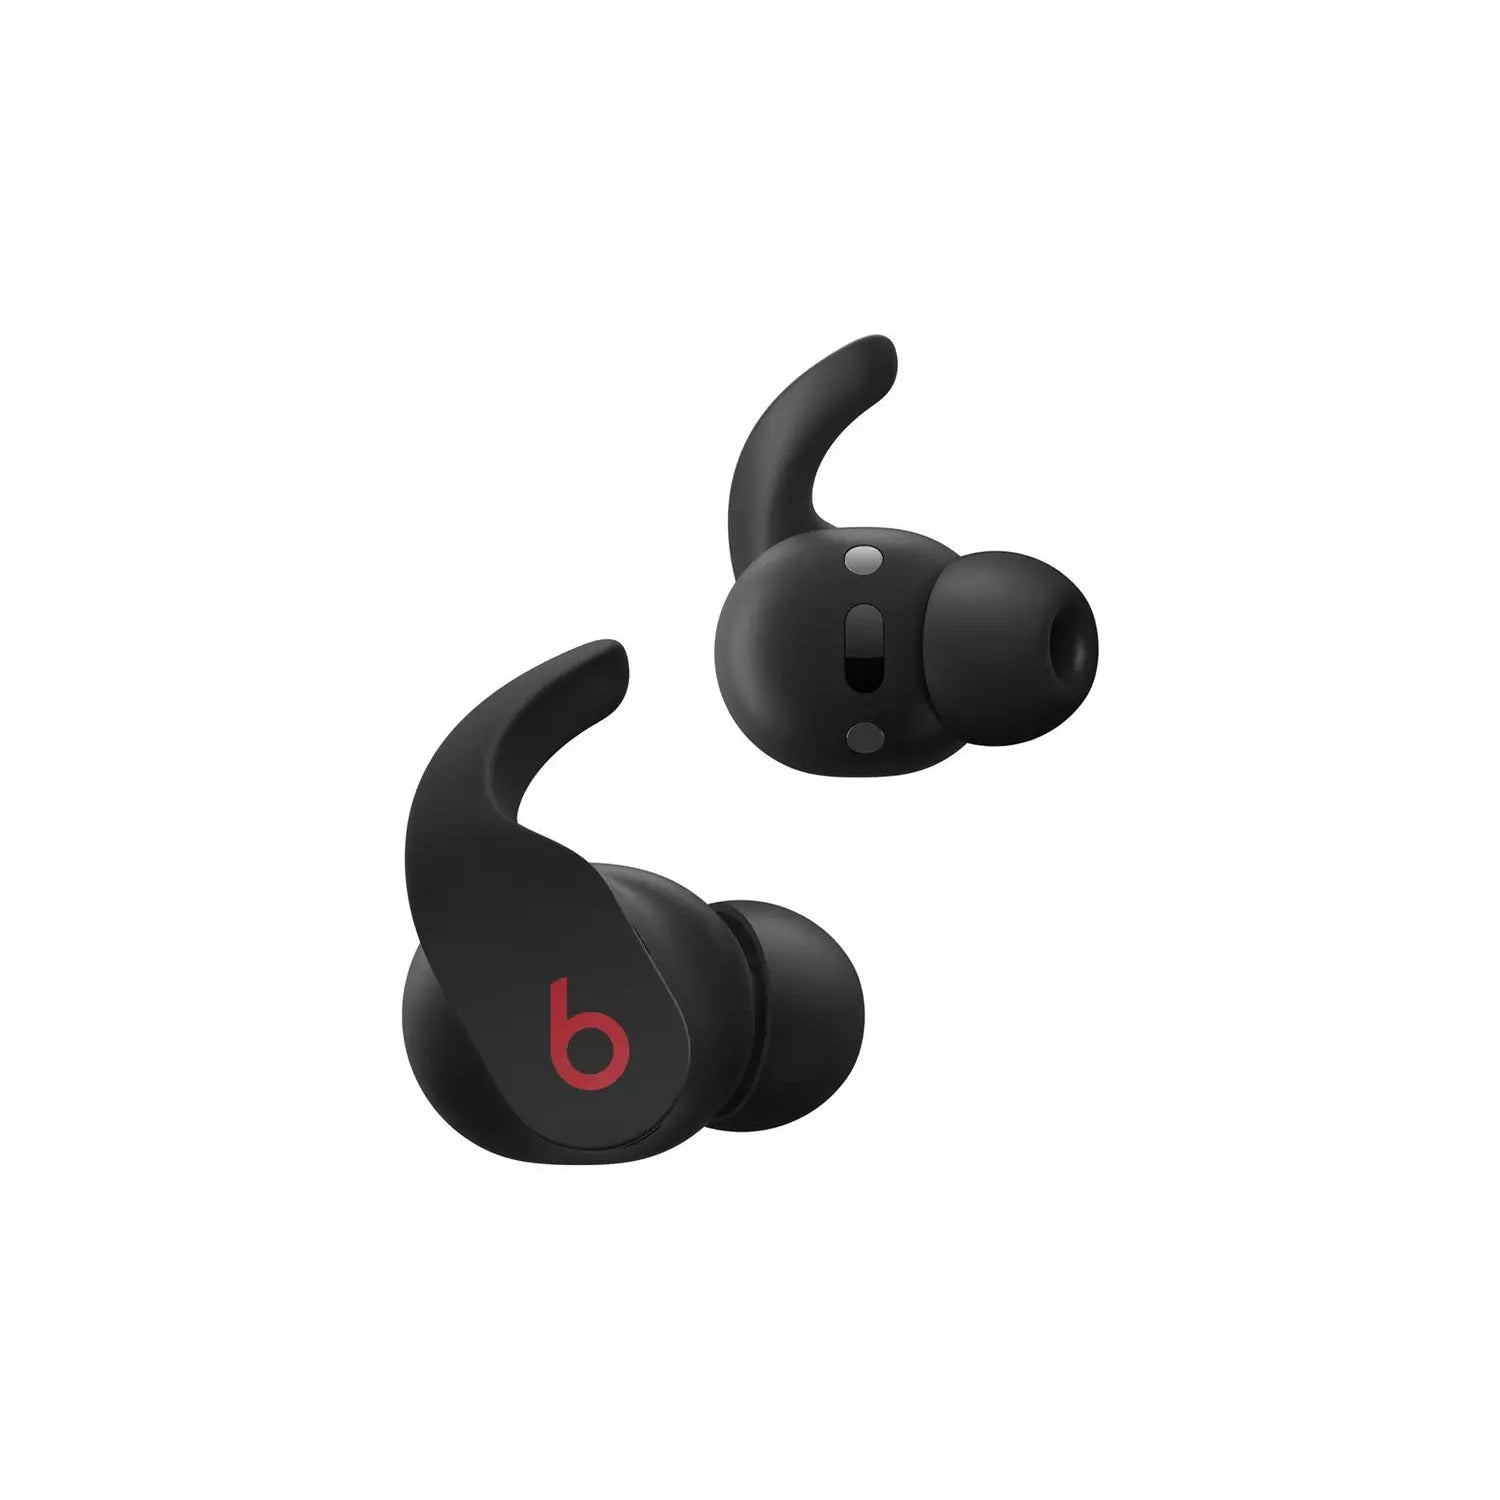 Beats Fit Pro True Wireless In-Ear Earbuds - Black - Refurbished Pristine